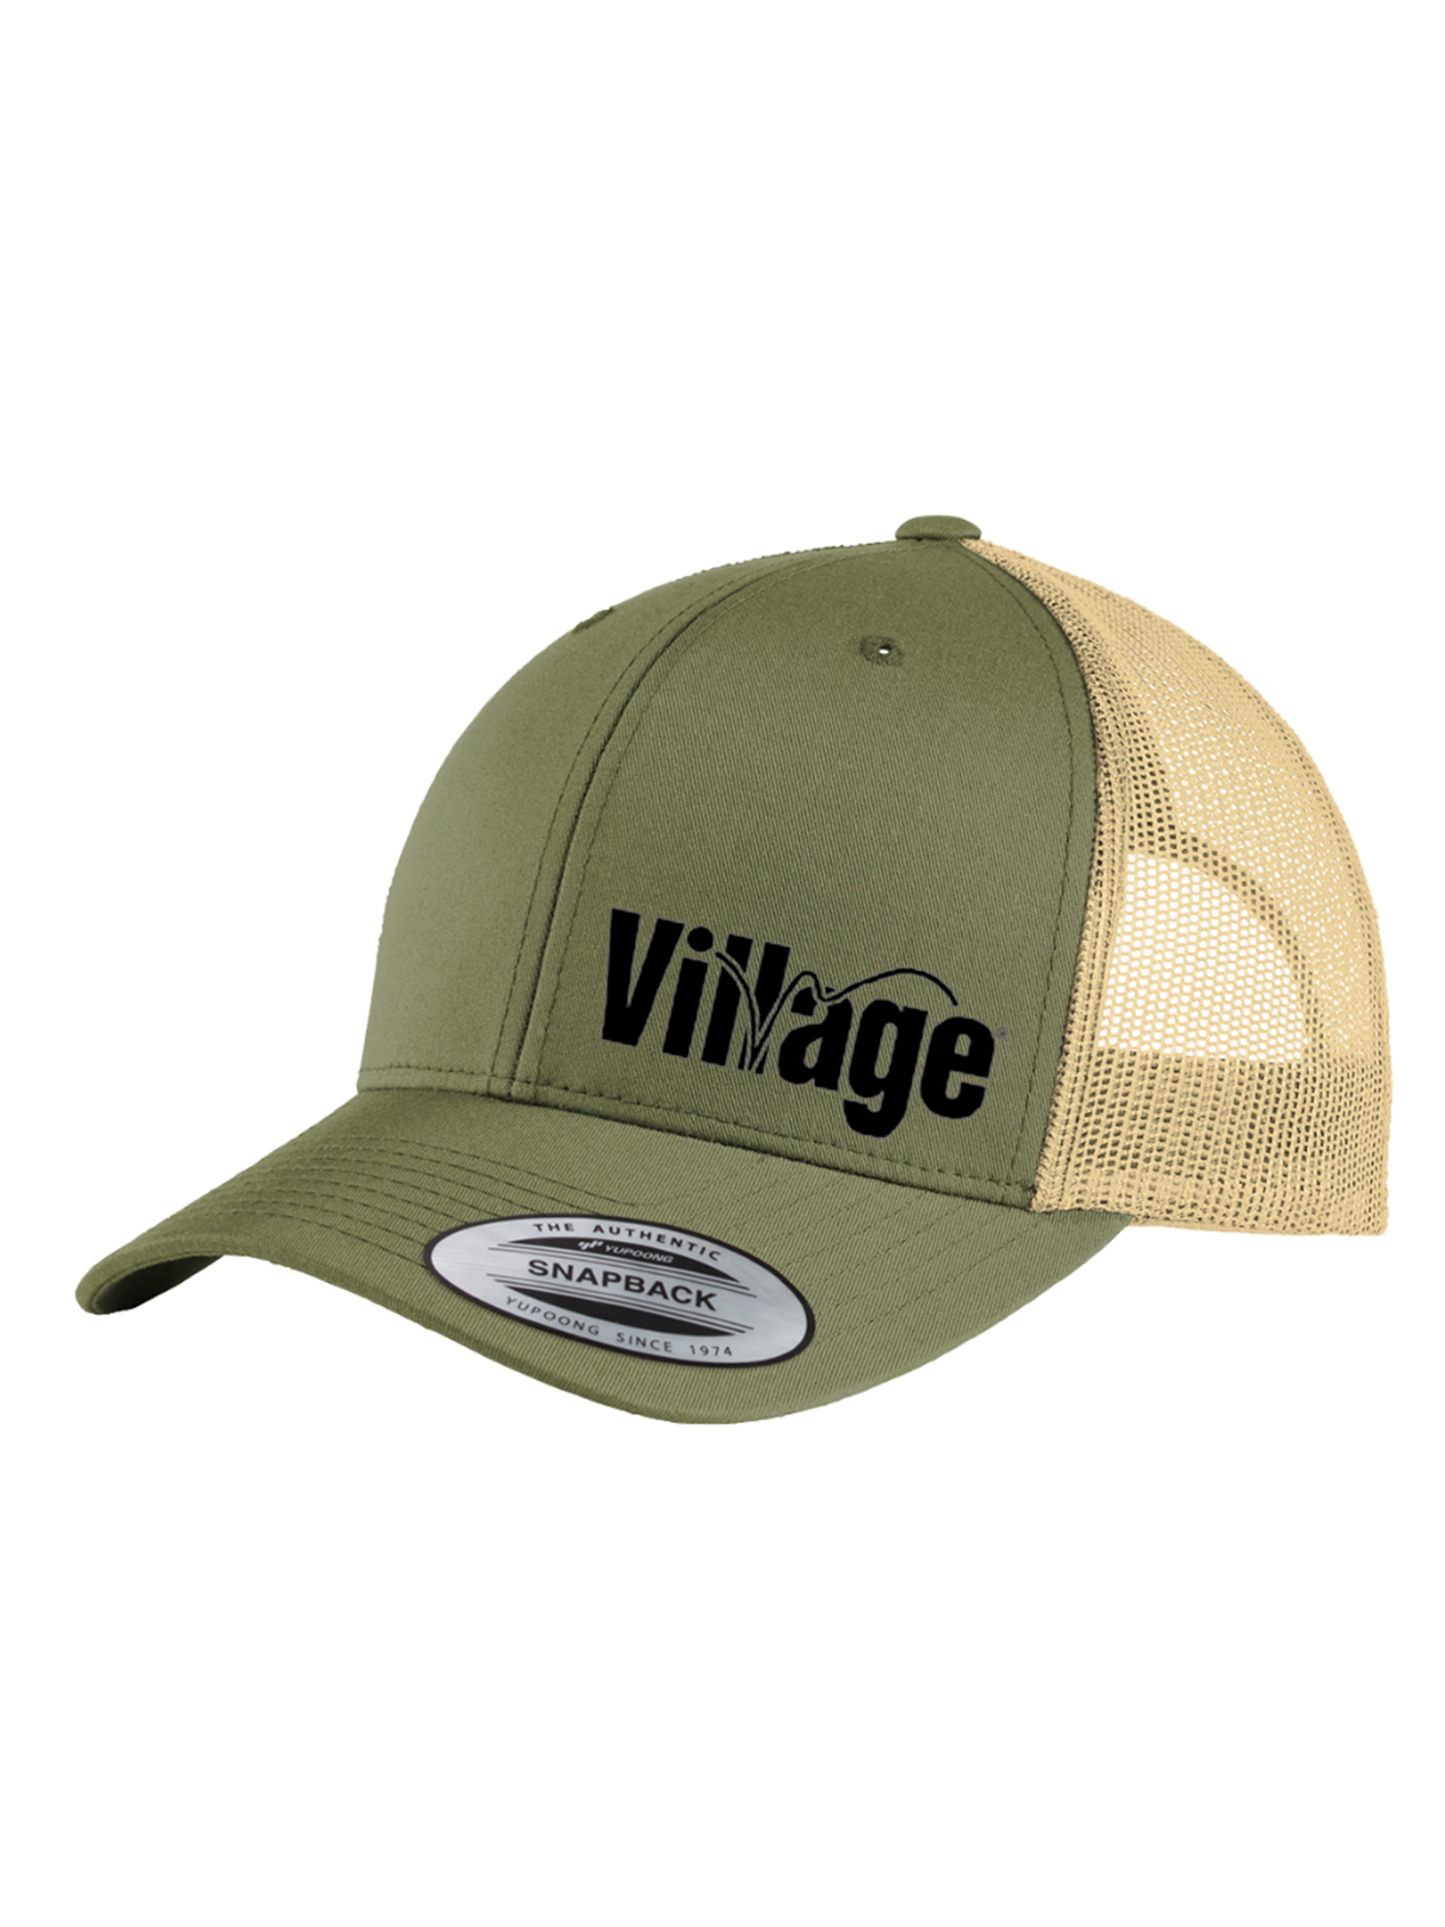 Village Retro Trucker Hat